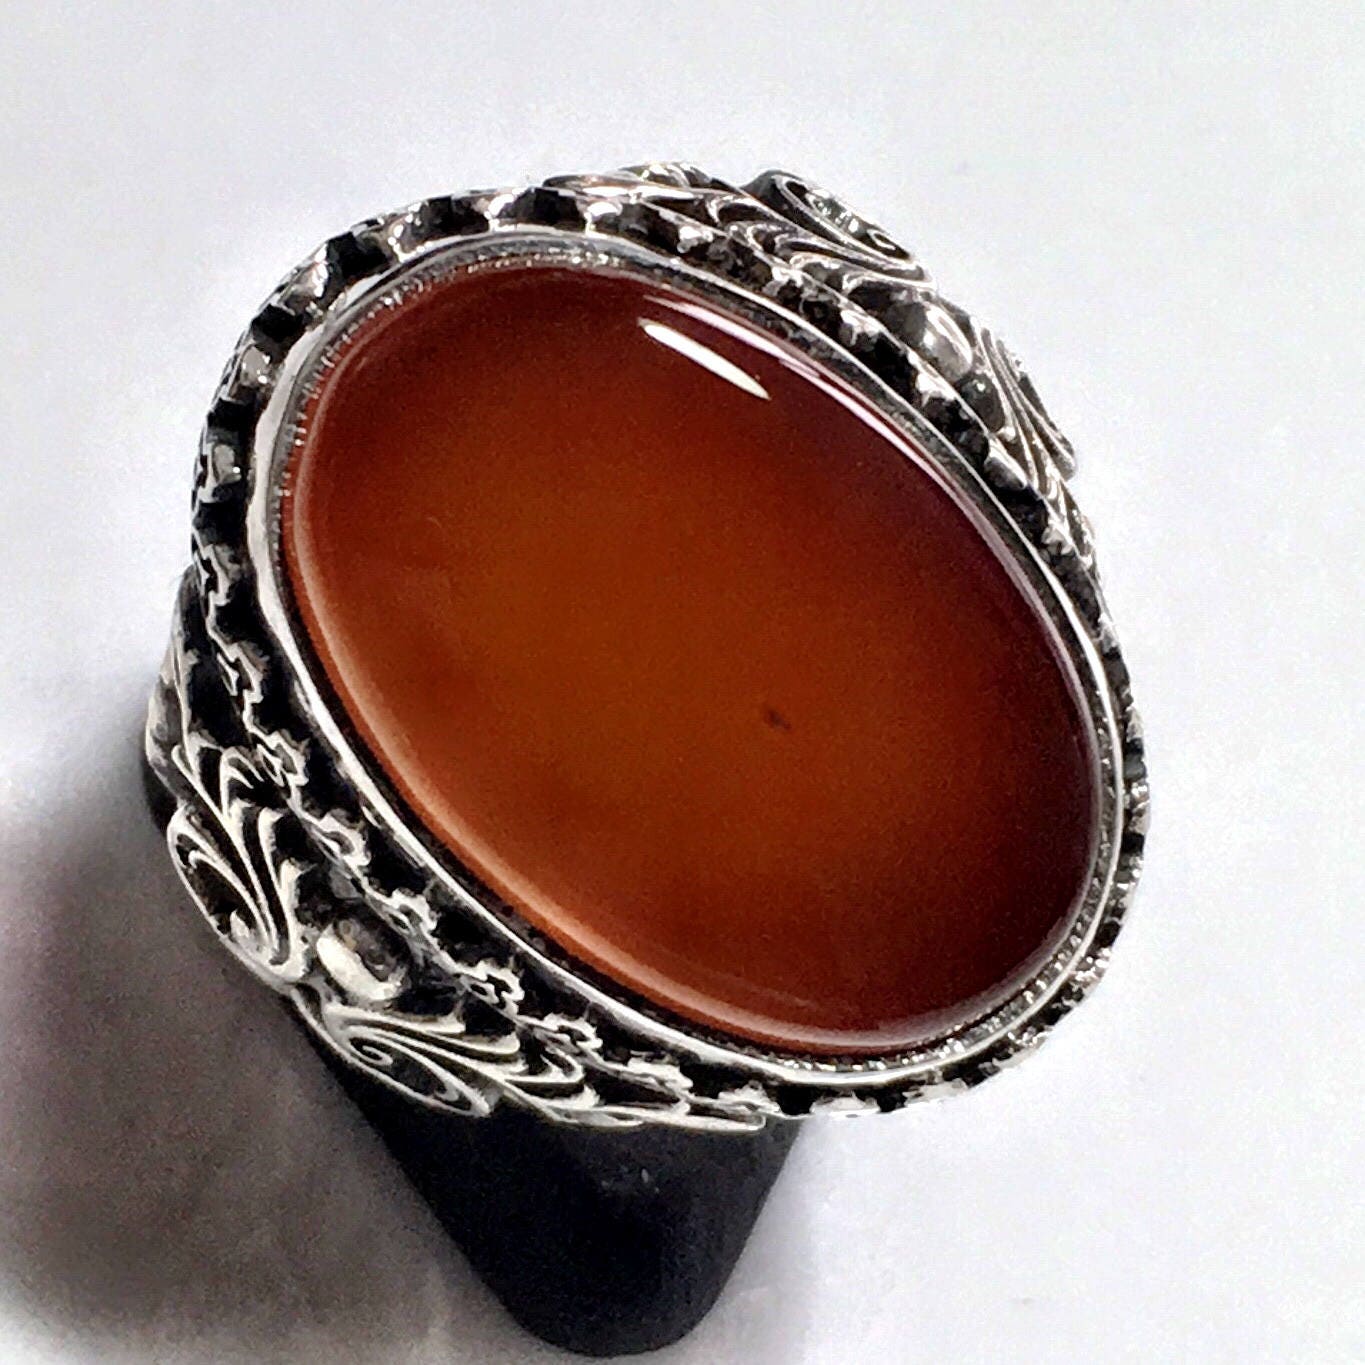 Silber Herren Ring Karneol Jemenit Aqeeq Sterling 925 Unikat Handgefertigt Kunsthandwerk Schmuck von KARAT35